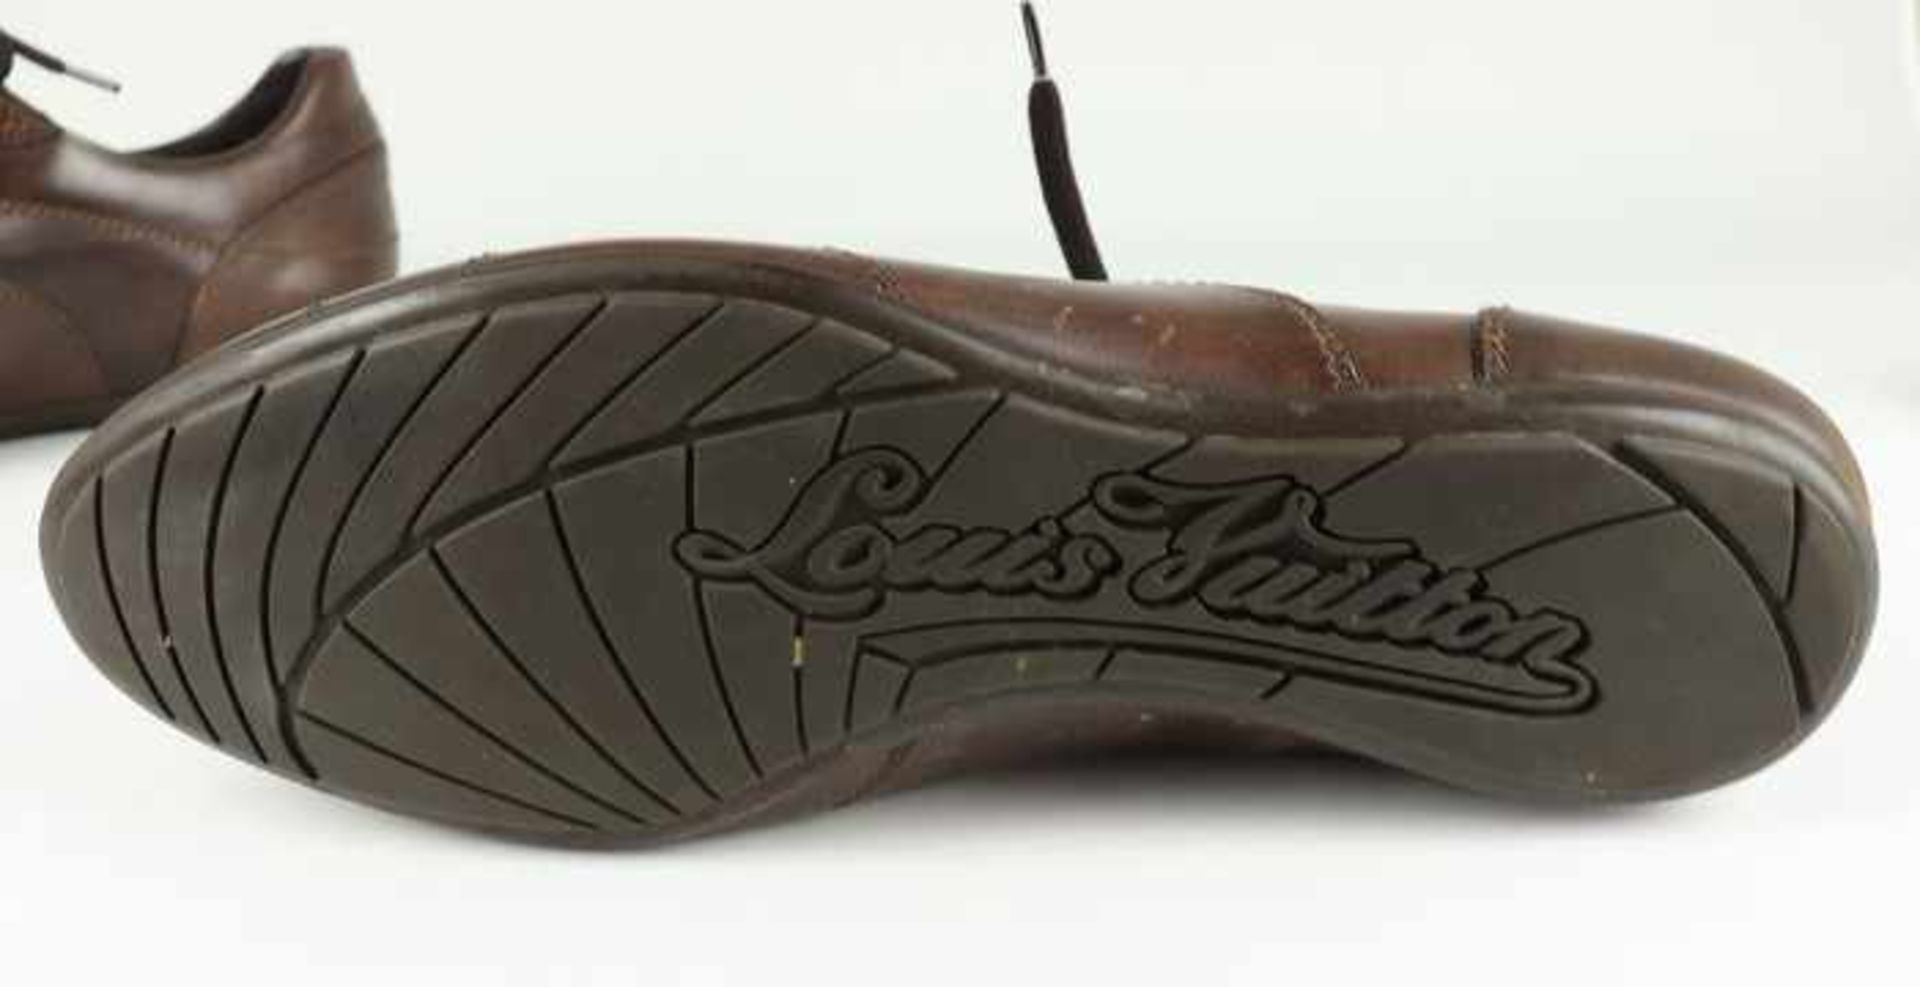 Louis Vuitton - HerrenschuheItalien, braunes Leder, sportliches Modell, OK, mit Staubbeutel u. - Bild 6 aus 8